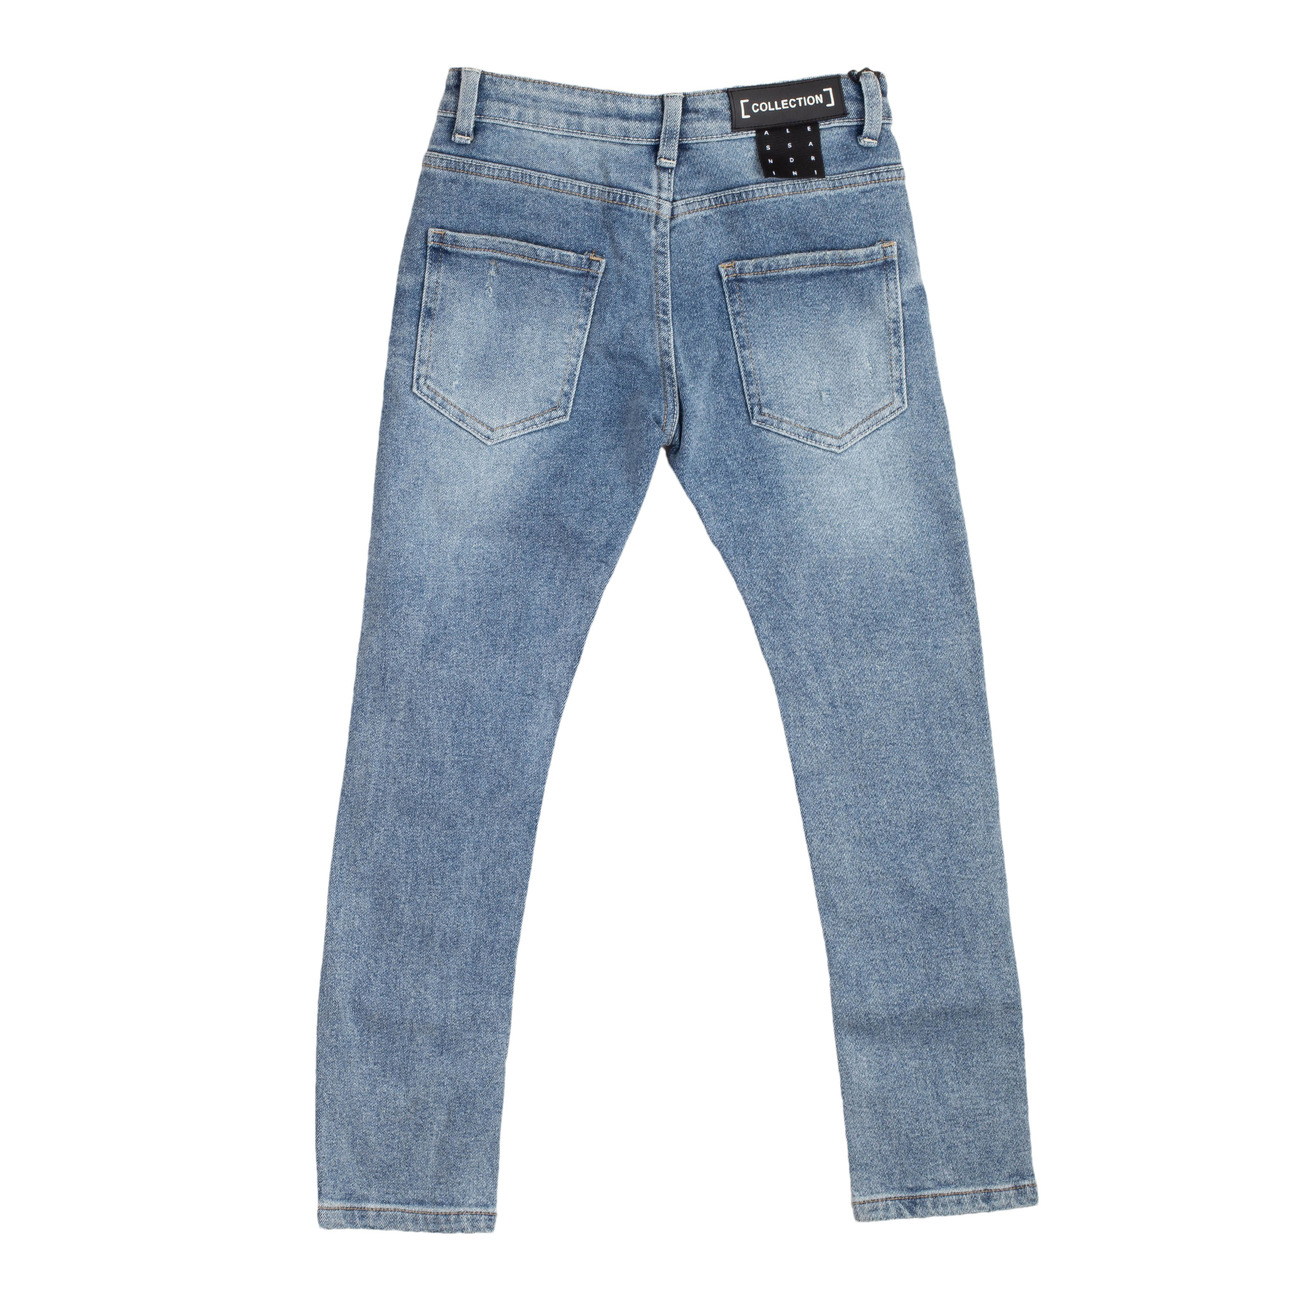 daniele alessandrini Jeans | B2Bkidsfashion